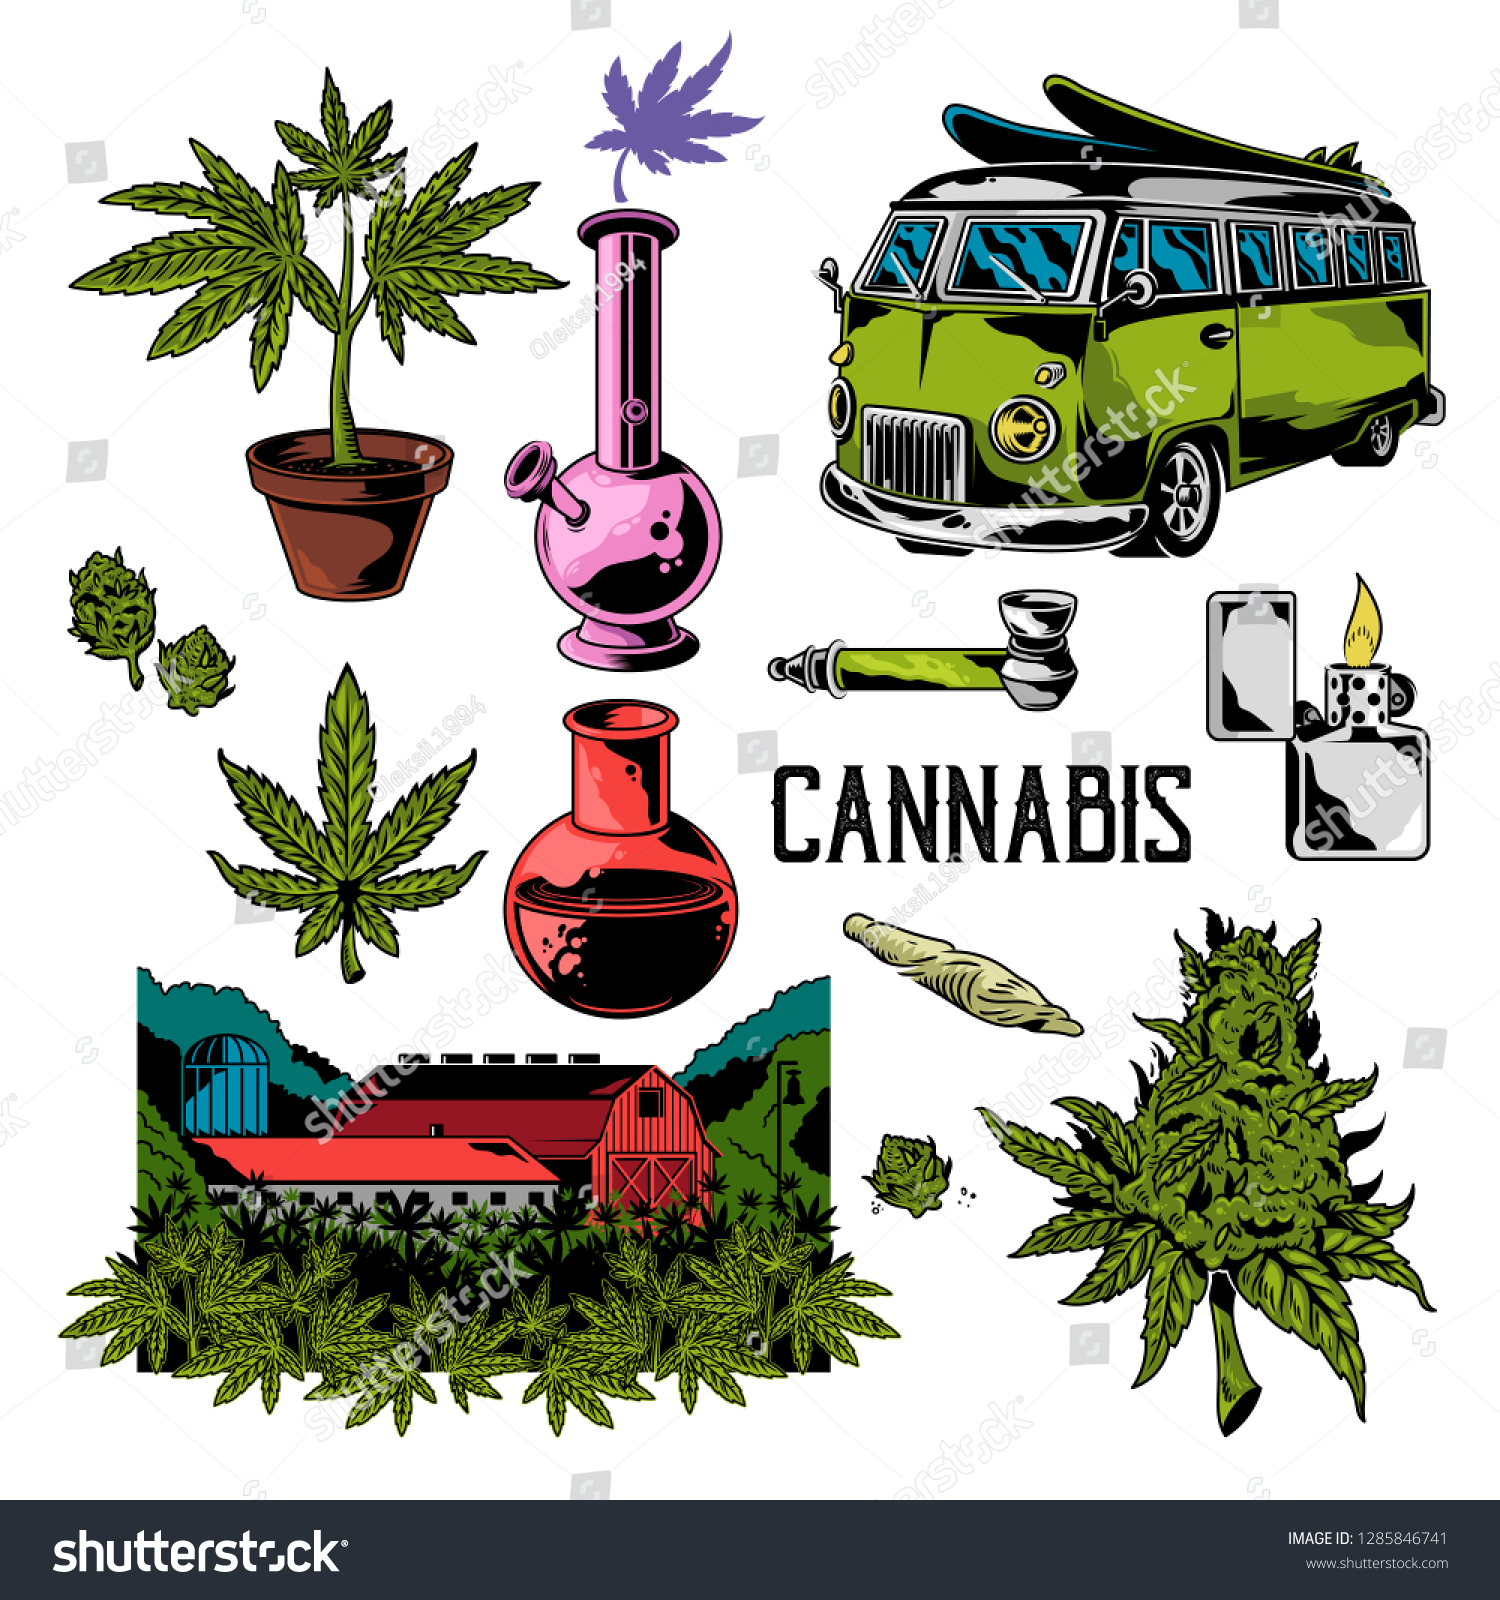 マリファナの葉を吸うための装置をカンナビスにセットする 大麻のビンテージ図面 レトロな旅行車の横に並ぶ自然農場 ポスターステッカーのパッチロゴ印刷のシャツの イラスト のベクター画像素材 ロイヤリティフリー